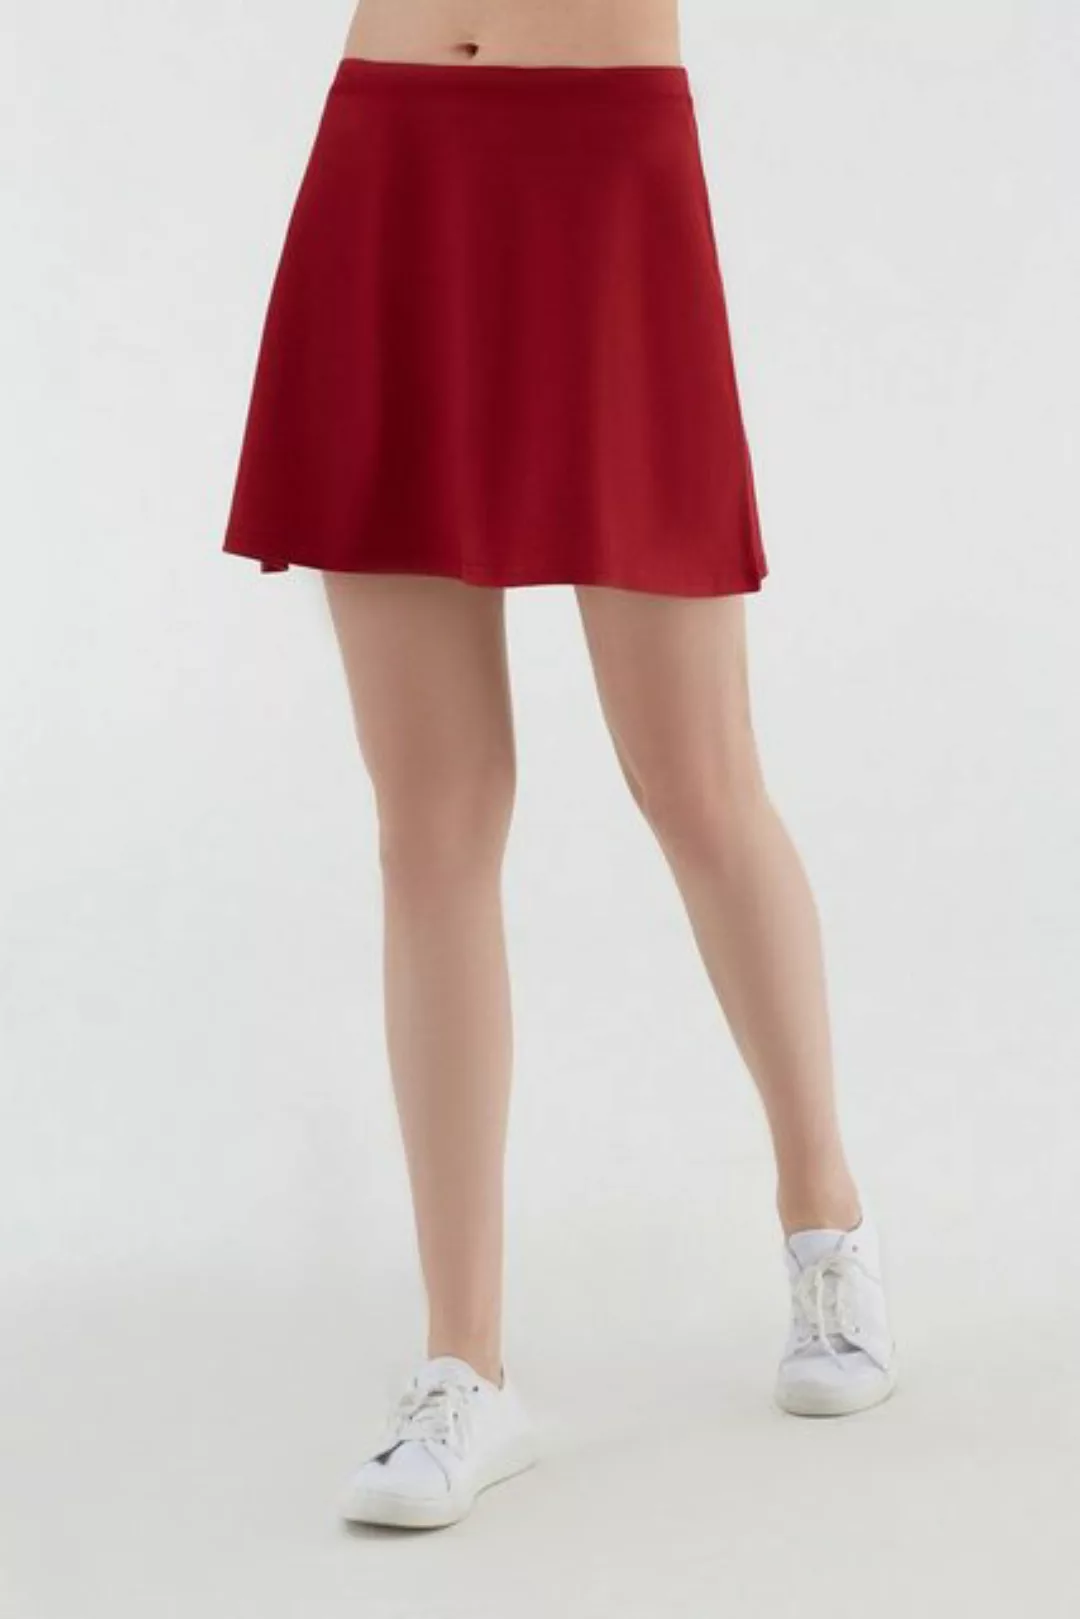 Damen Röcke Bio-baumwolle Rock Kleid günstig online kaufen